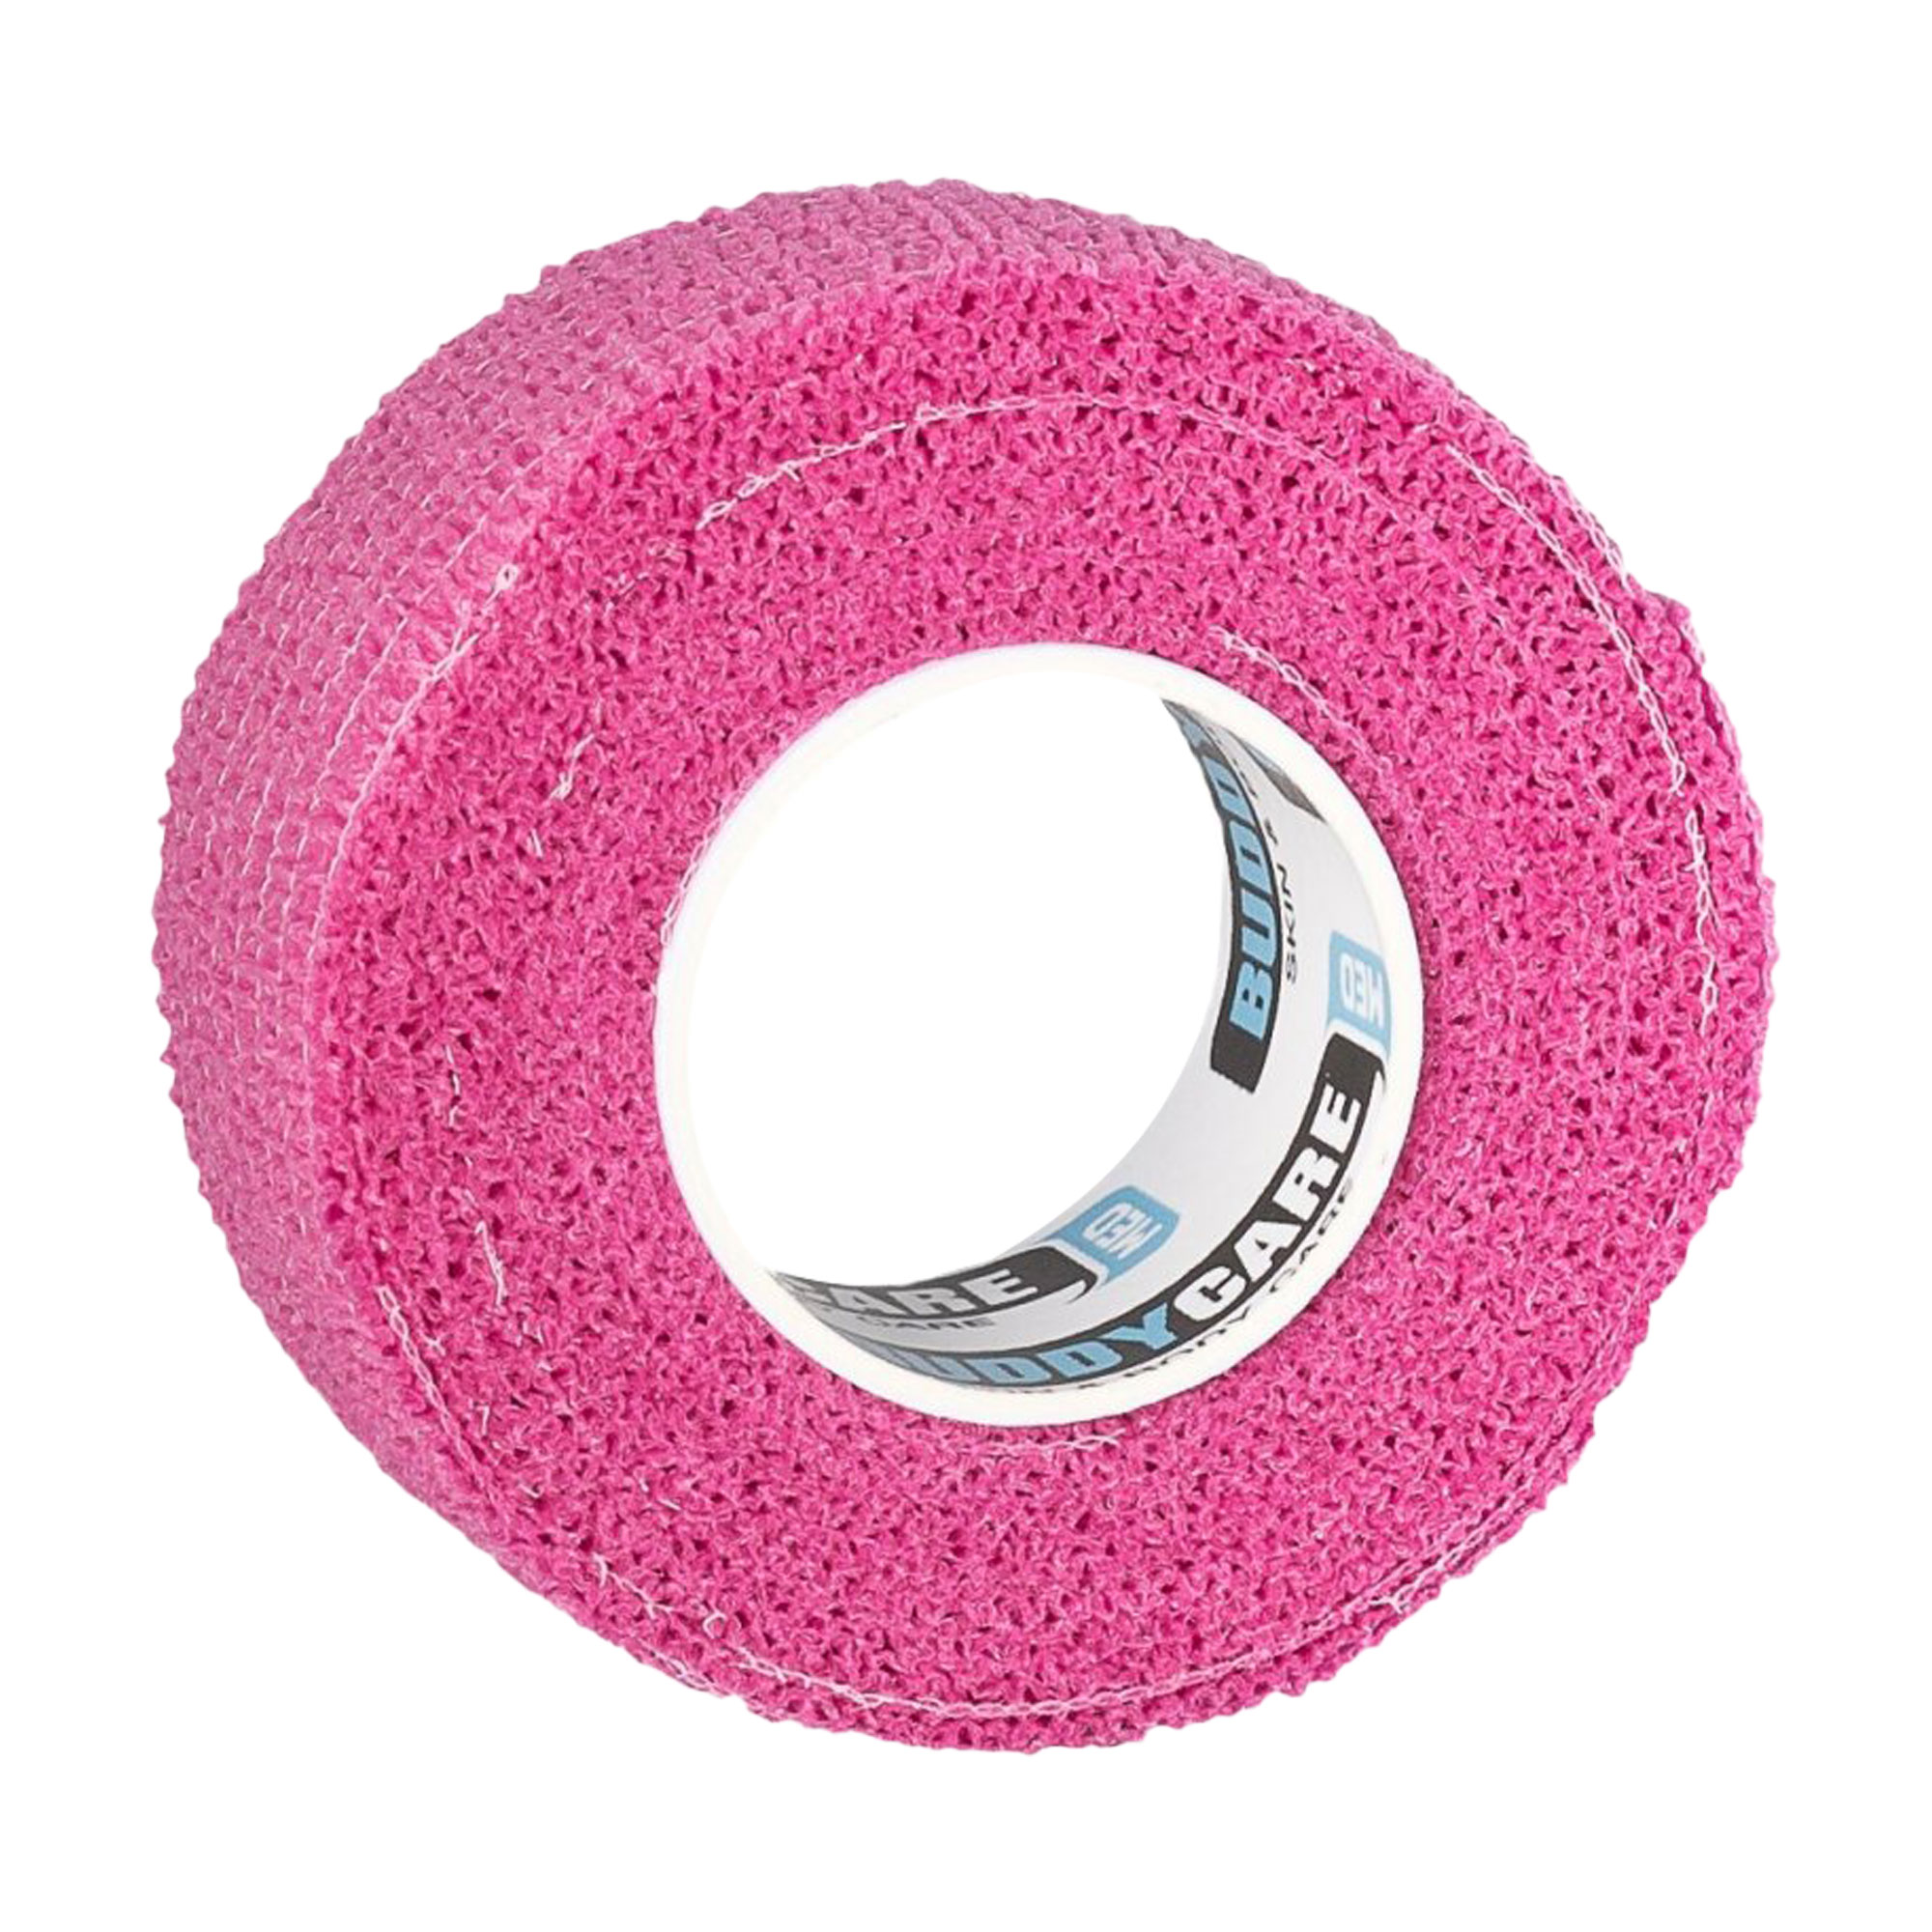 Selbsthaftendes latexfreies Fingertape. Als Finger-, Blasen- und Nagelschutz. Farbe: pink.